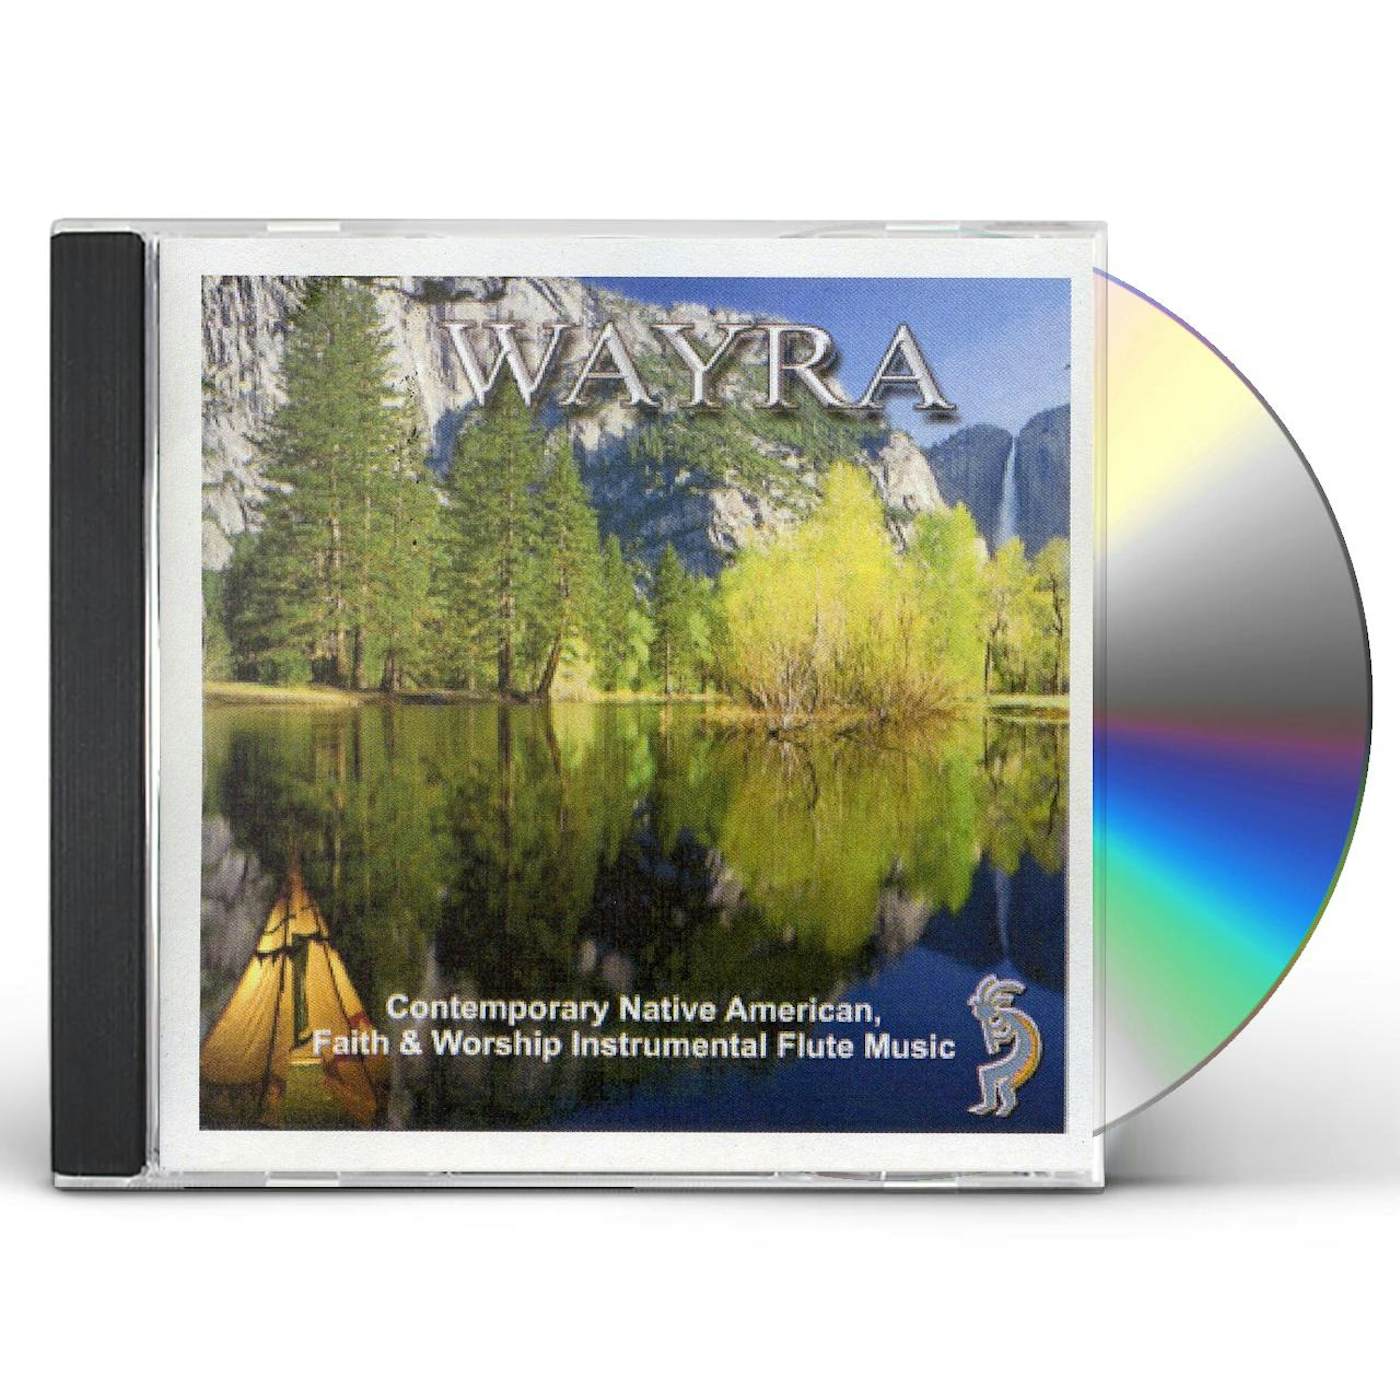 Wayra CONTEMPORARY NATIVE AMERICAN FAITH & WORSHIP FLUTE CD